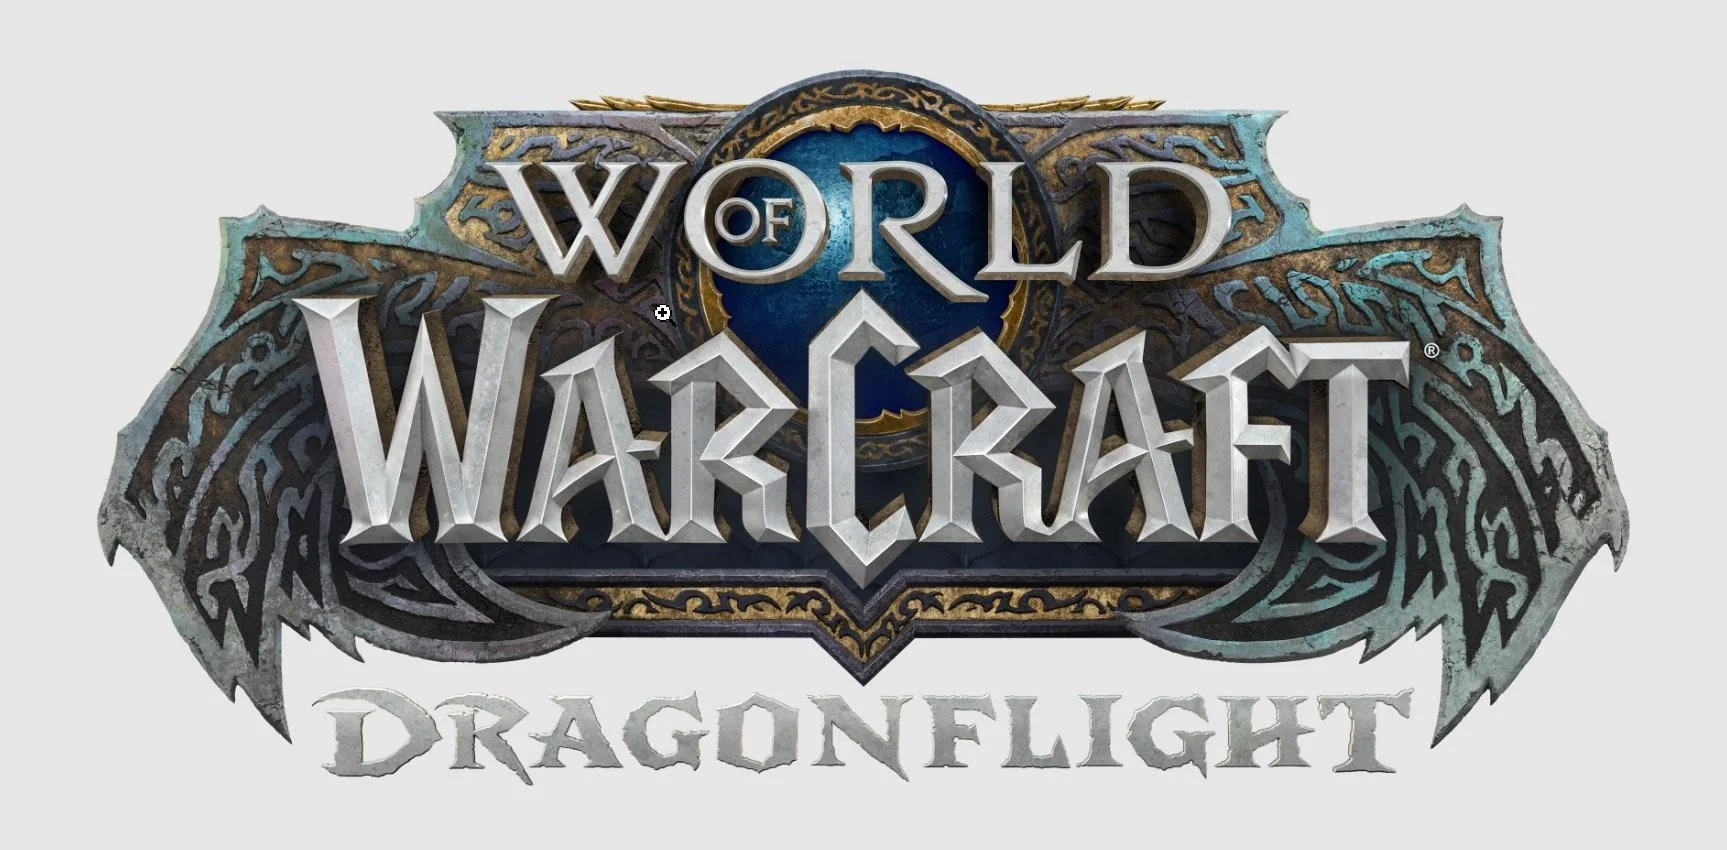 Утечка: лого и подробности дополнения Dragonflight для World of Warcraft - фото 1